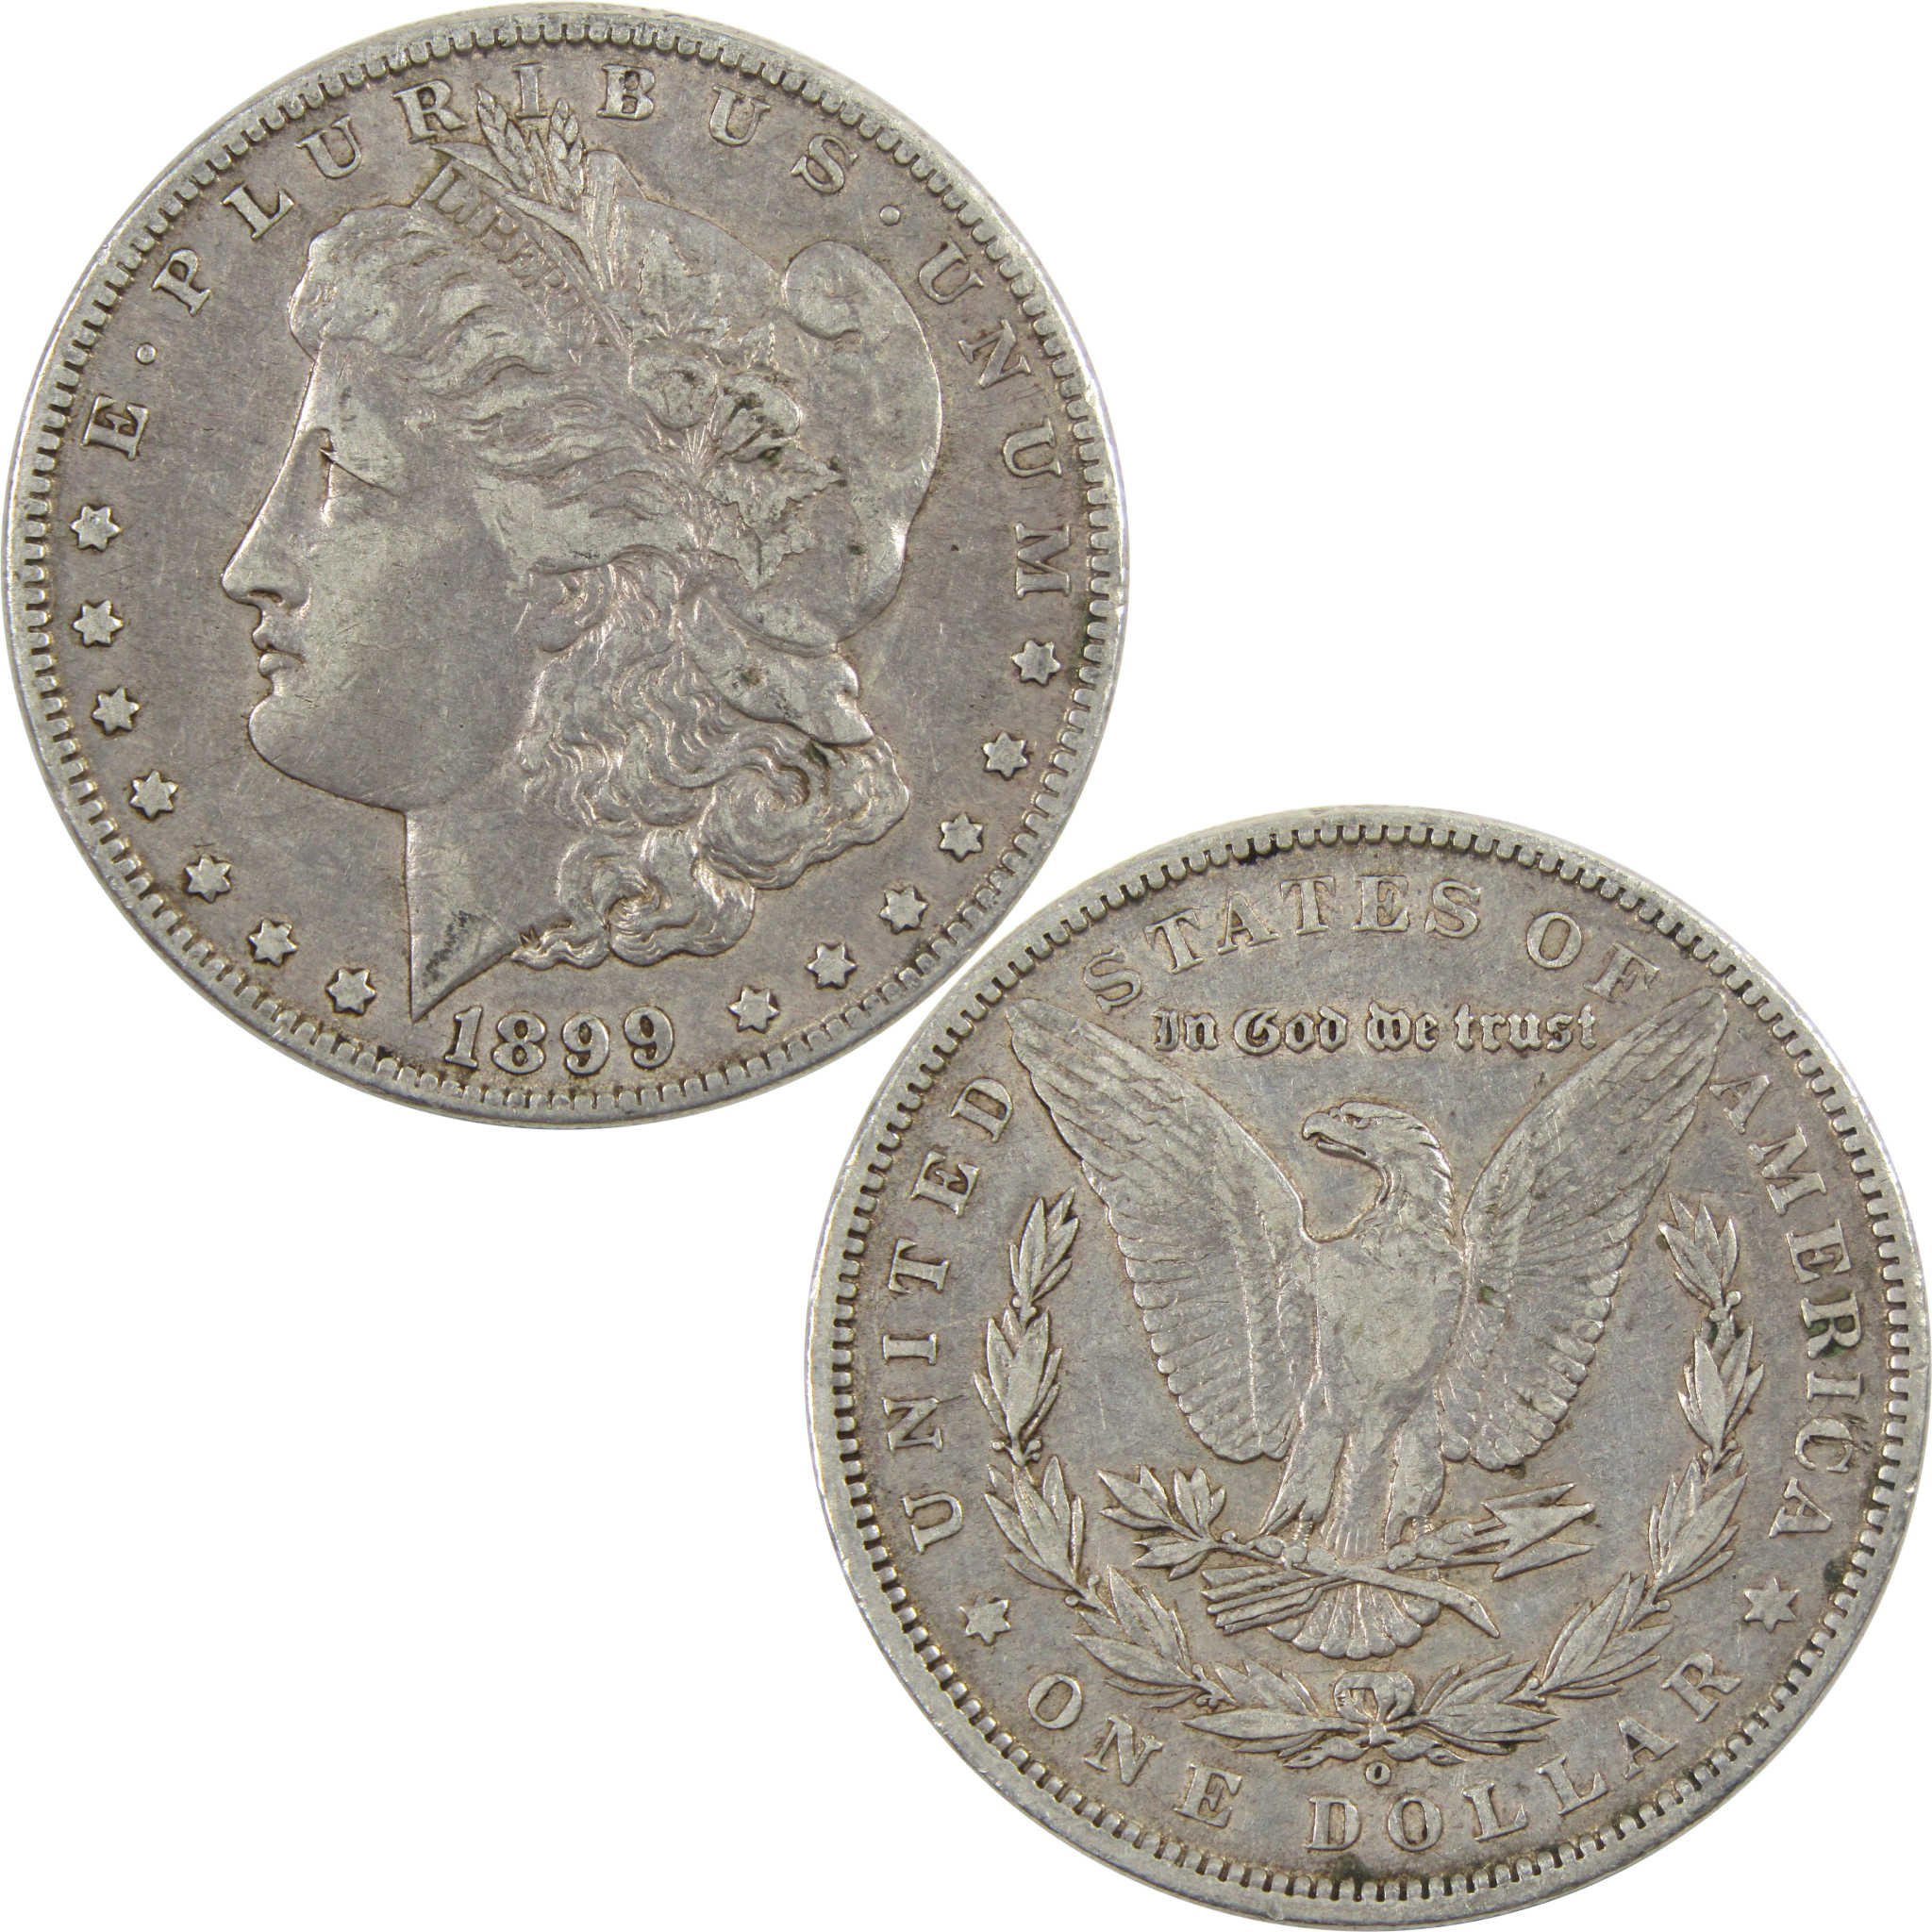 1899 O Micro O Morgan Dollar VF Very Fine 90% Silver $1 Coin SKU:I5942 - Morgan coin - Morgan silver dollar - Morgan silver dollar for sale - Profile Coins &amp; Collectibles